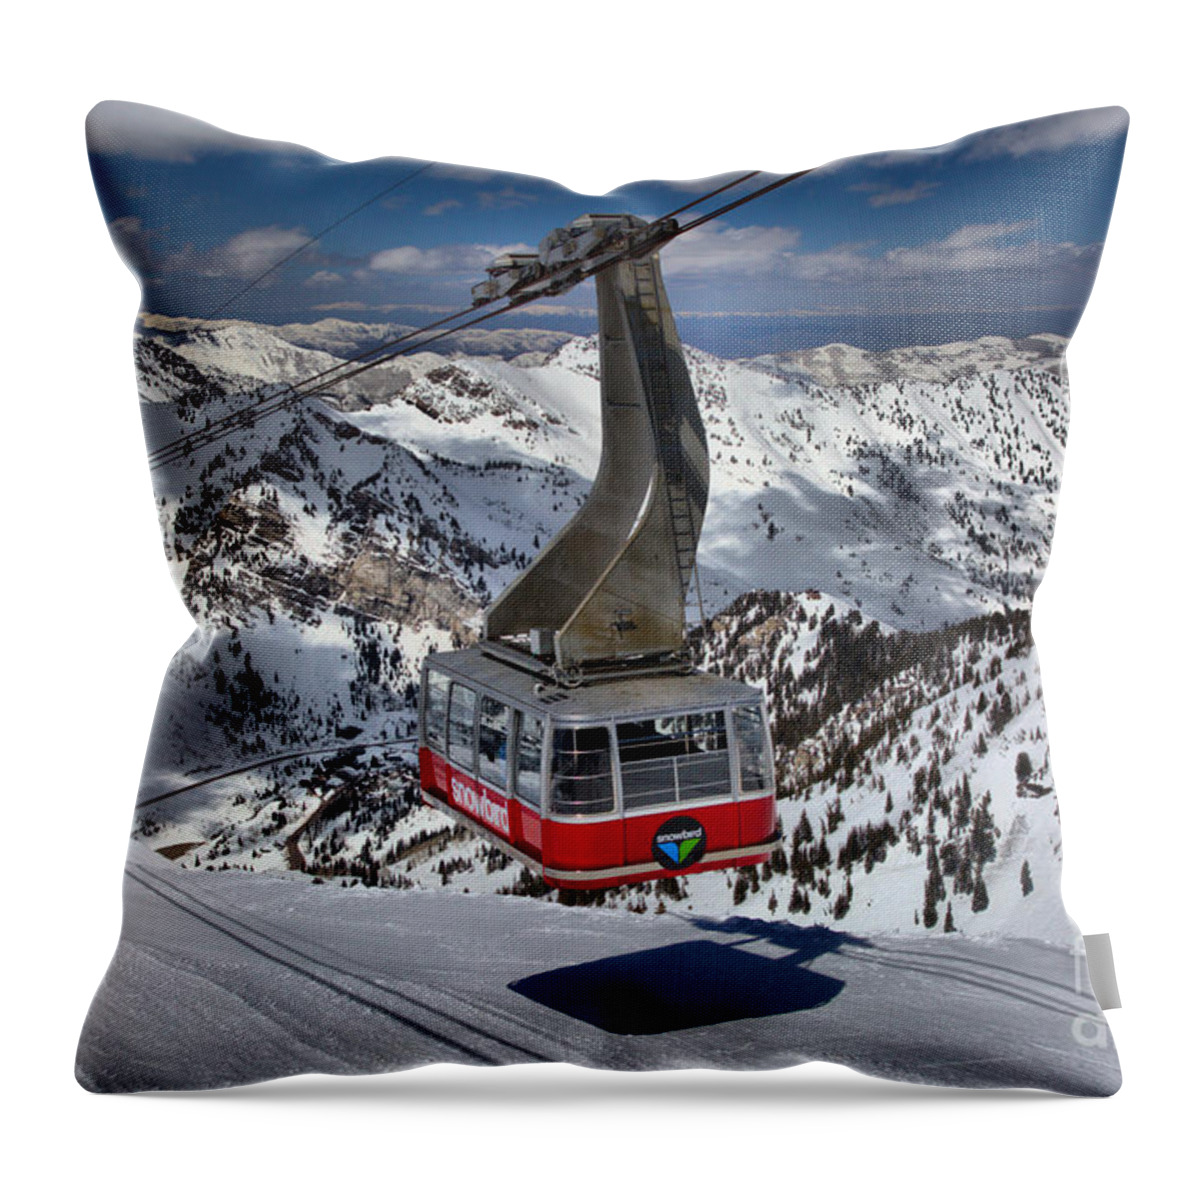 Snowbird Tram Throw Pillow featuring the photograph Snowbird Tram Approaching Hidden Peak by Adam Jewell